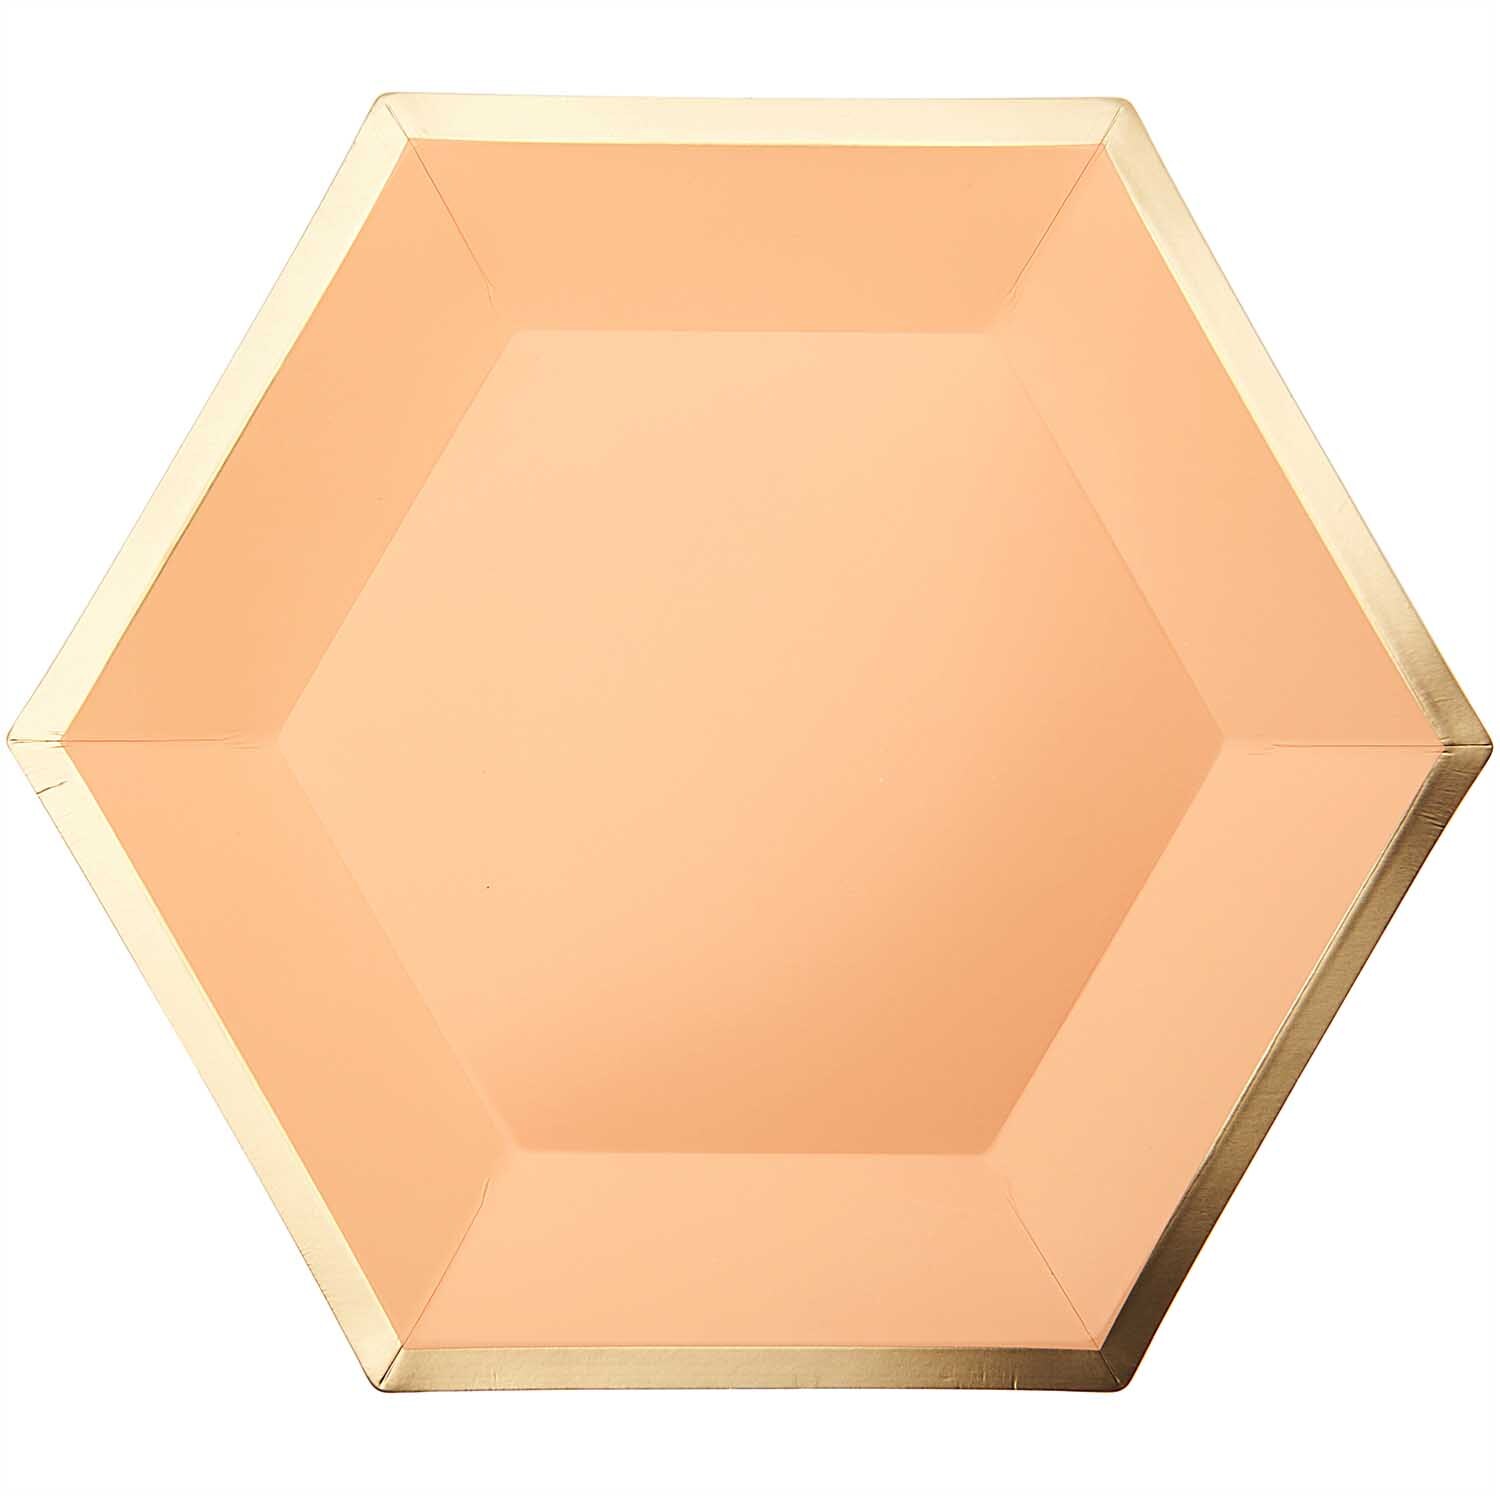 Pappteller Sechseck apricot-gold 27x23,5cm 10 Stück